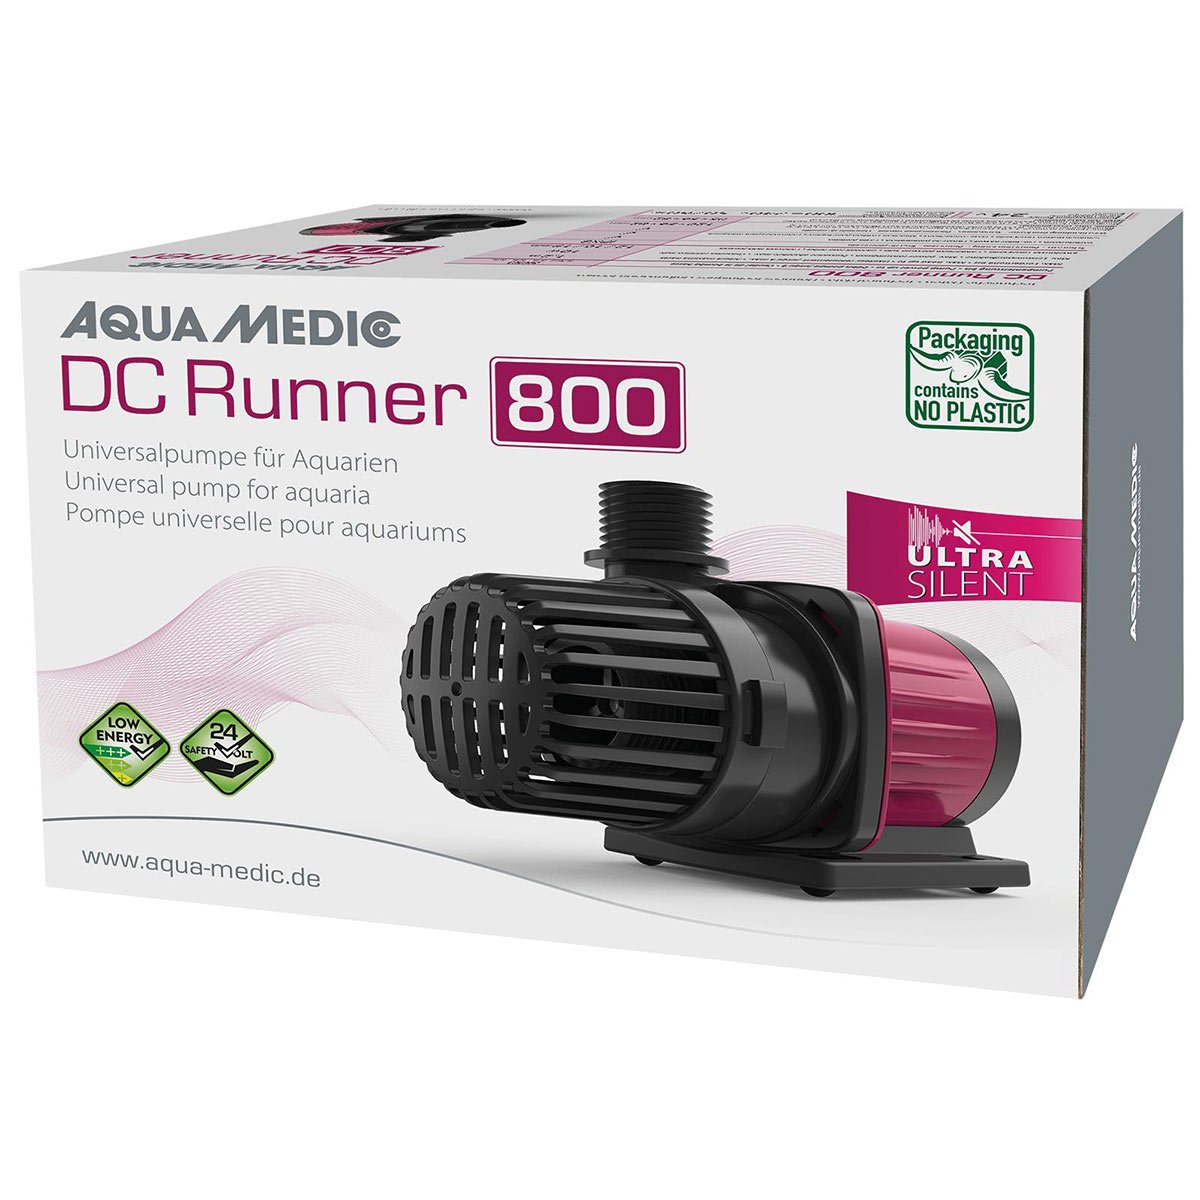 Aqua Medic Aquariumpumpe DC Runner 800 von Aqua Medic